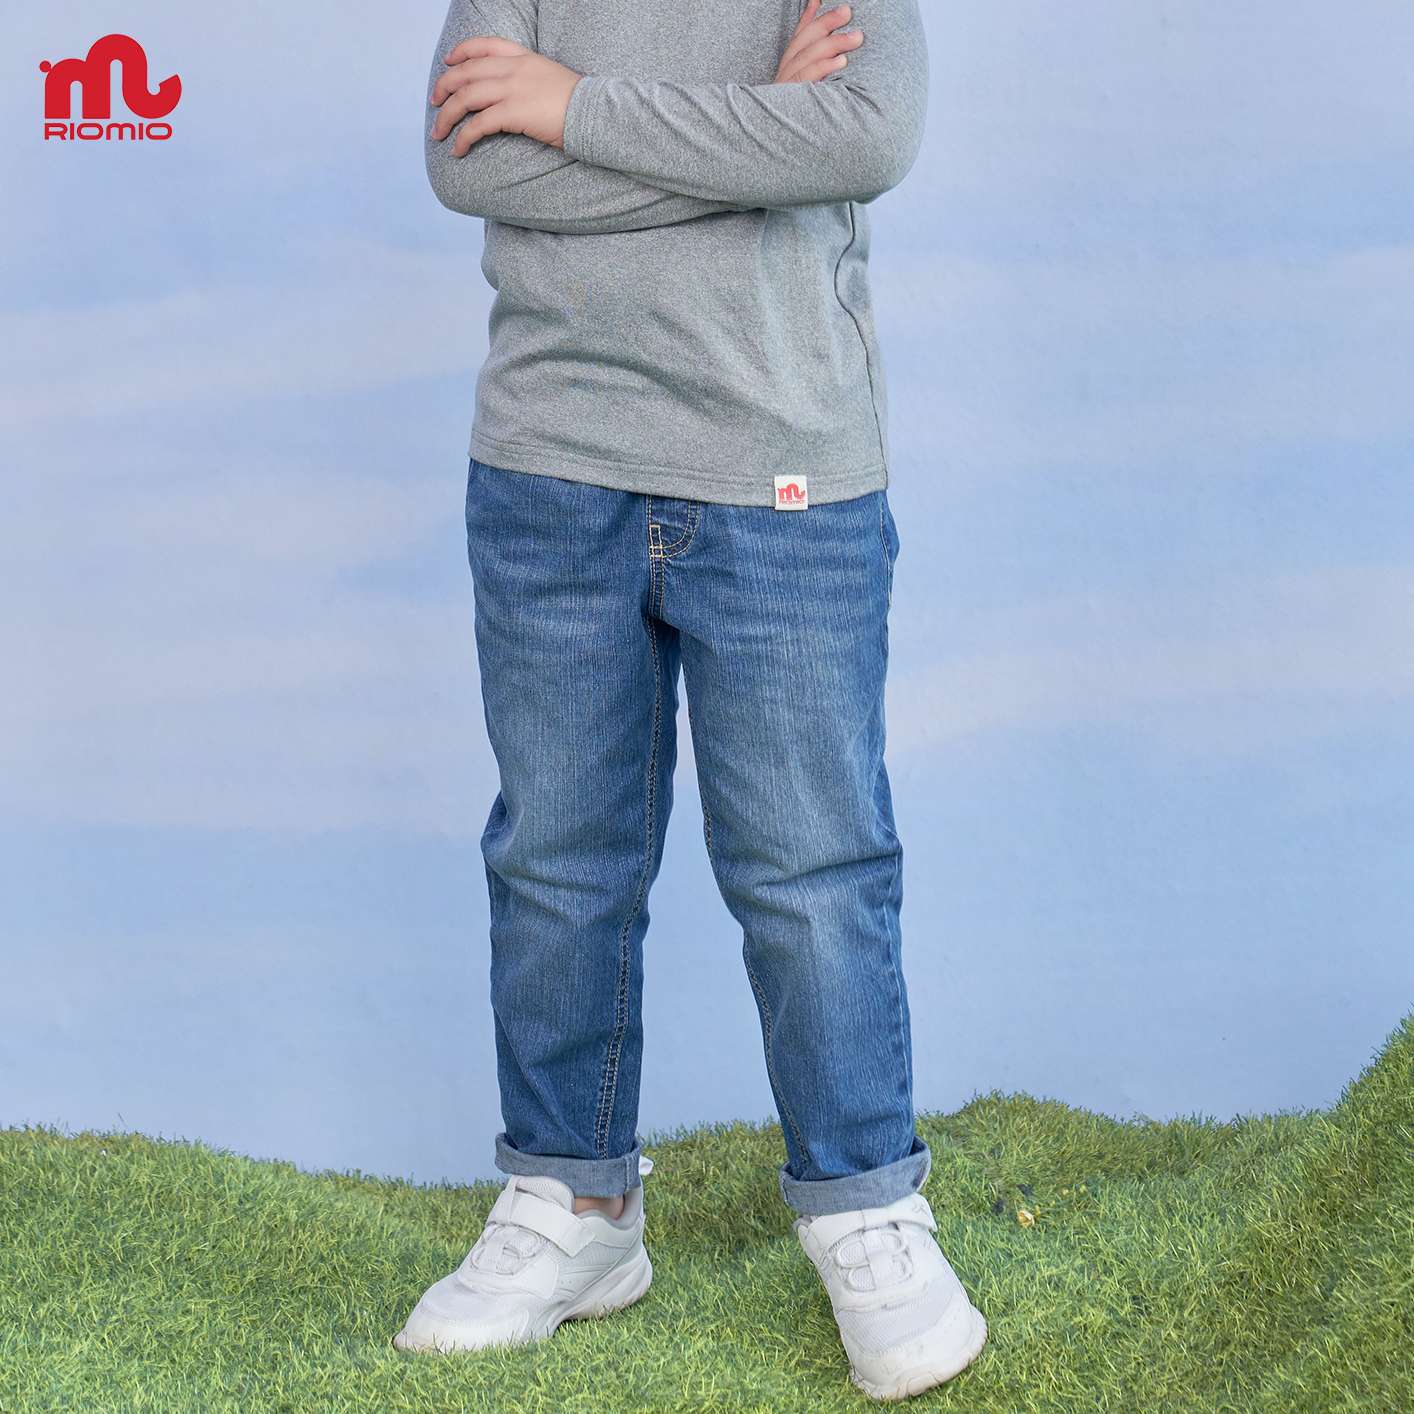 Quần jeans dài bé trai RIOMIO size 20-50 kg dáng slimfit đi học đi chơi mềm mại co dãn kèm quà tặng - RM327